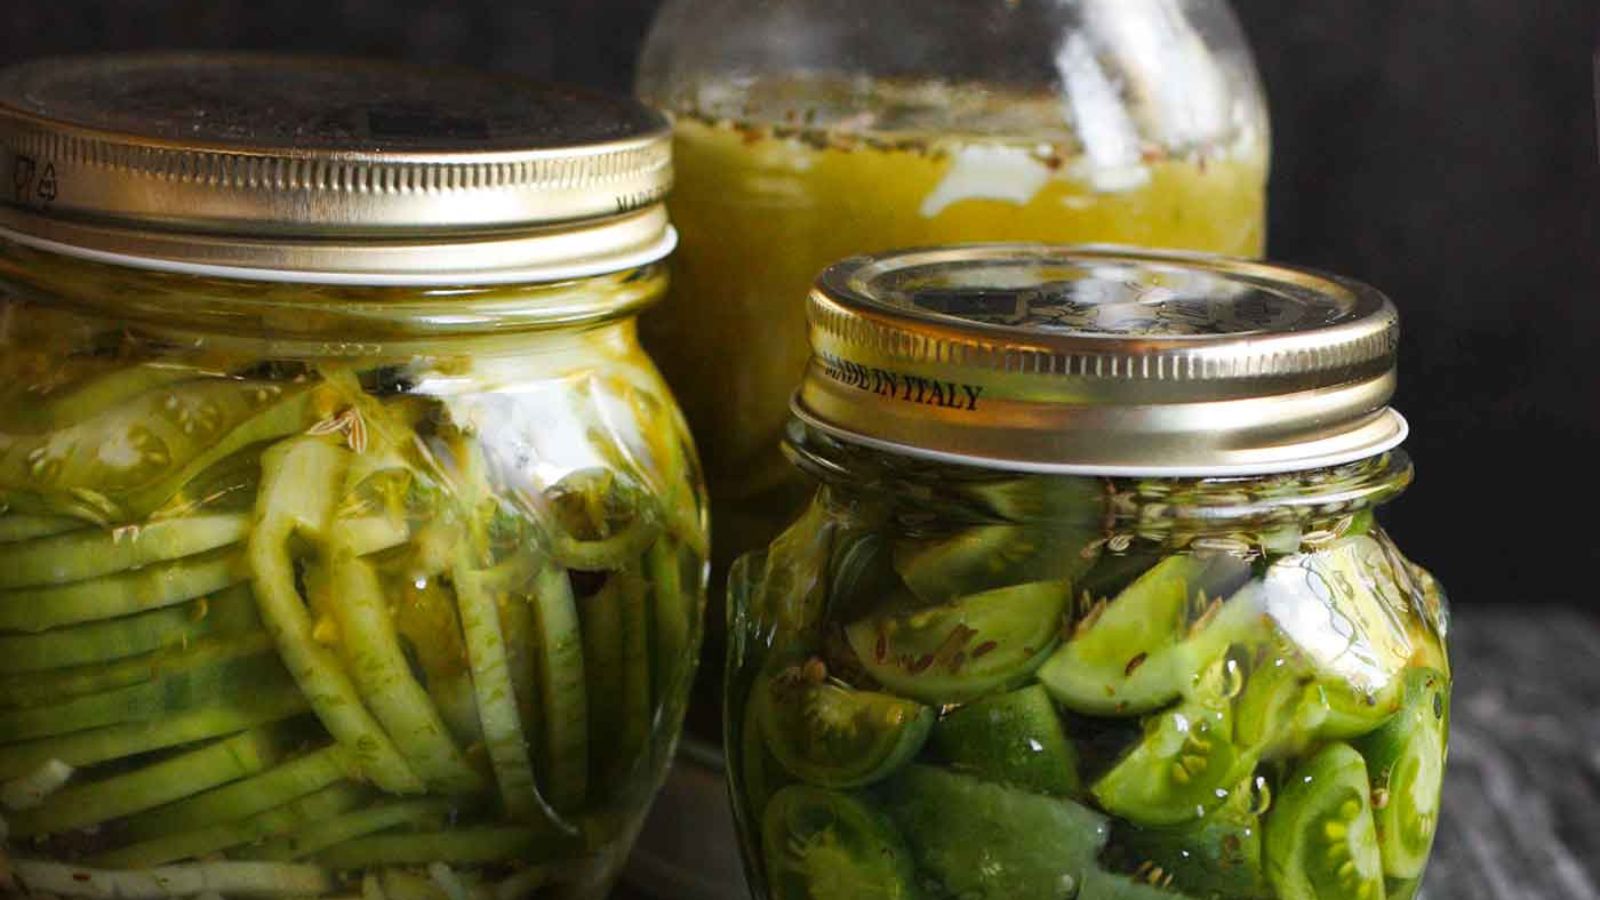 Glass jars full of green tomato pickles.